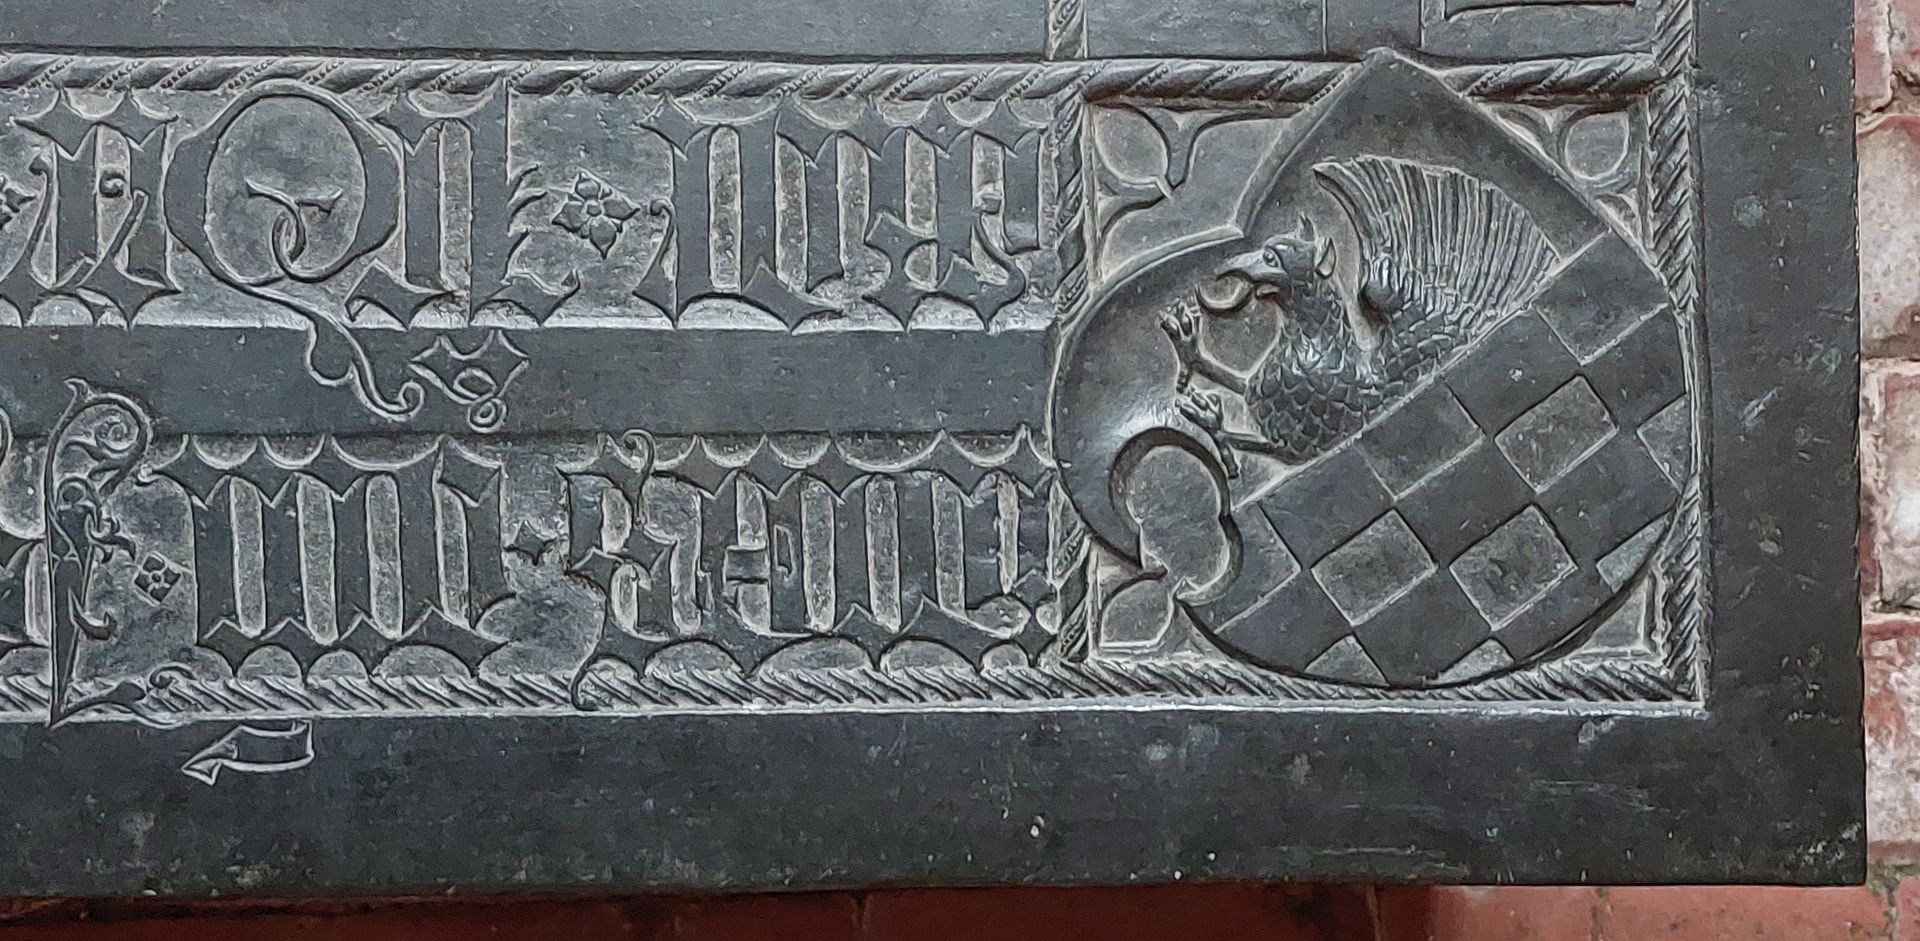 Grabplatte der Herzogin Sophia von Mecklenburg, Prinzessin von Pommern untere rechte Plattenecke mit dem Wappen von Wolgast (geteilt, oben wachsender Greif, unten gescheckt)